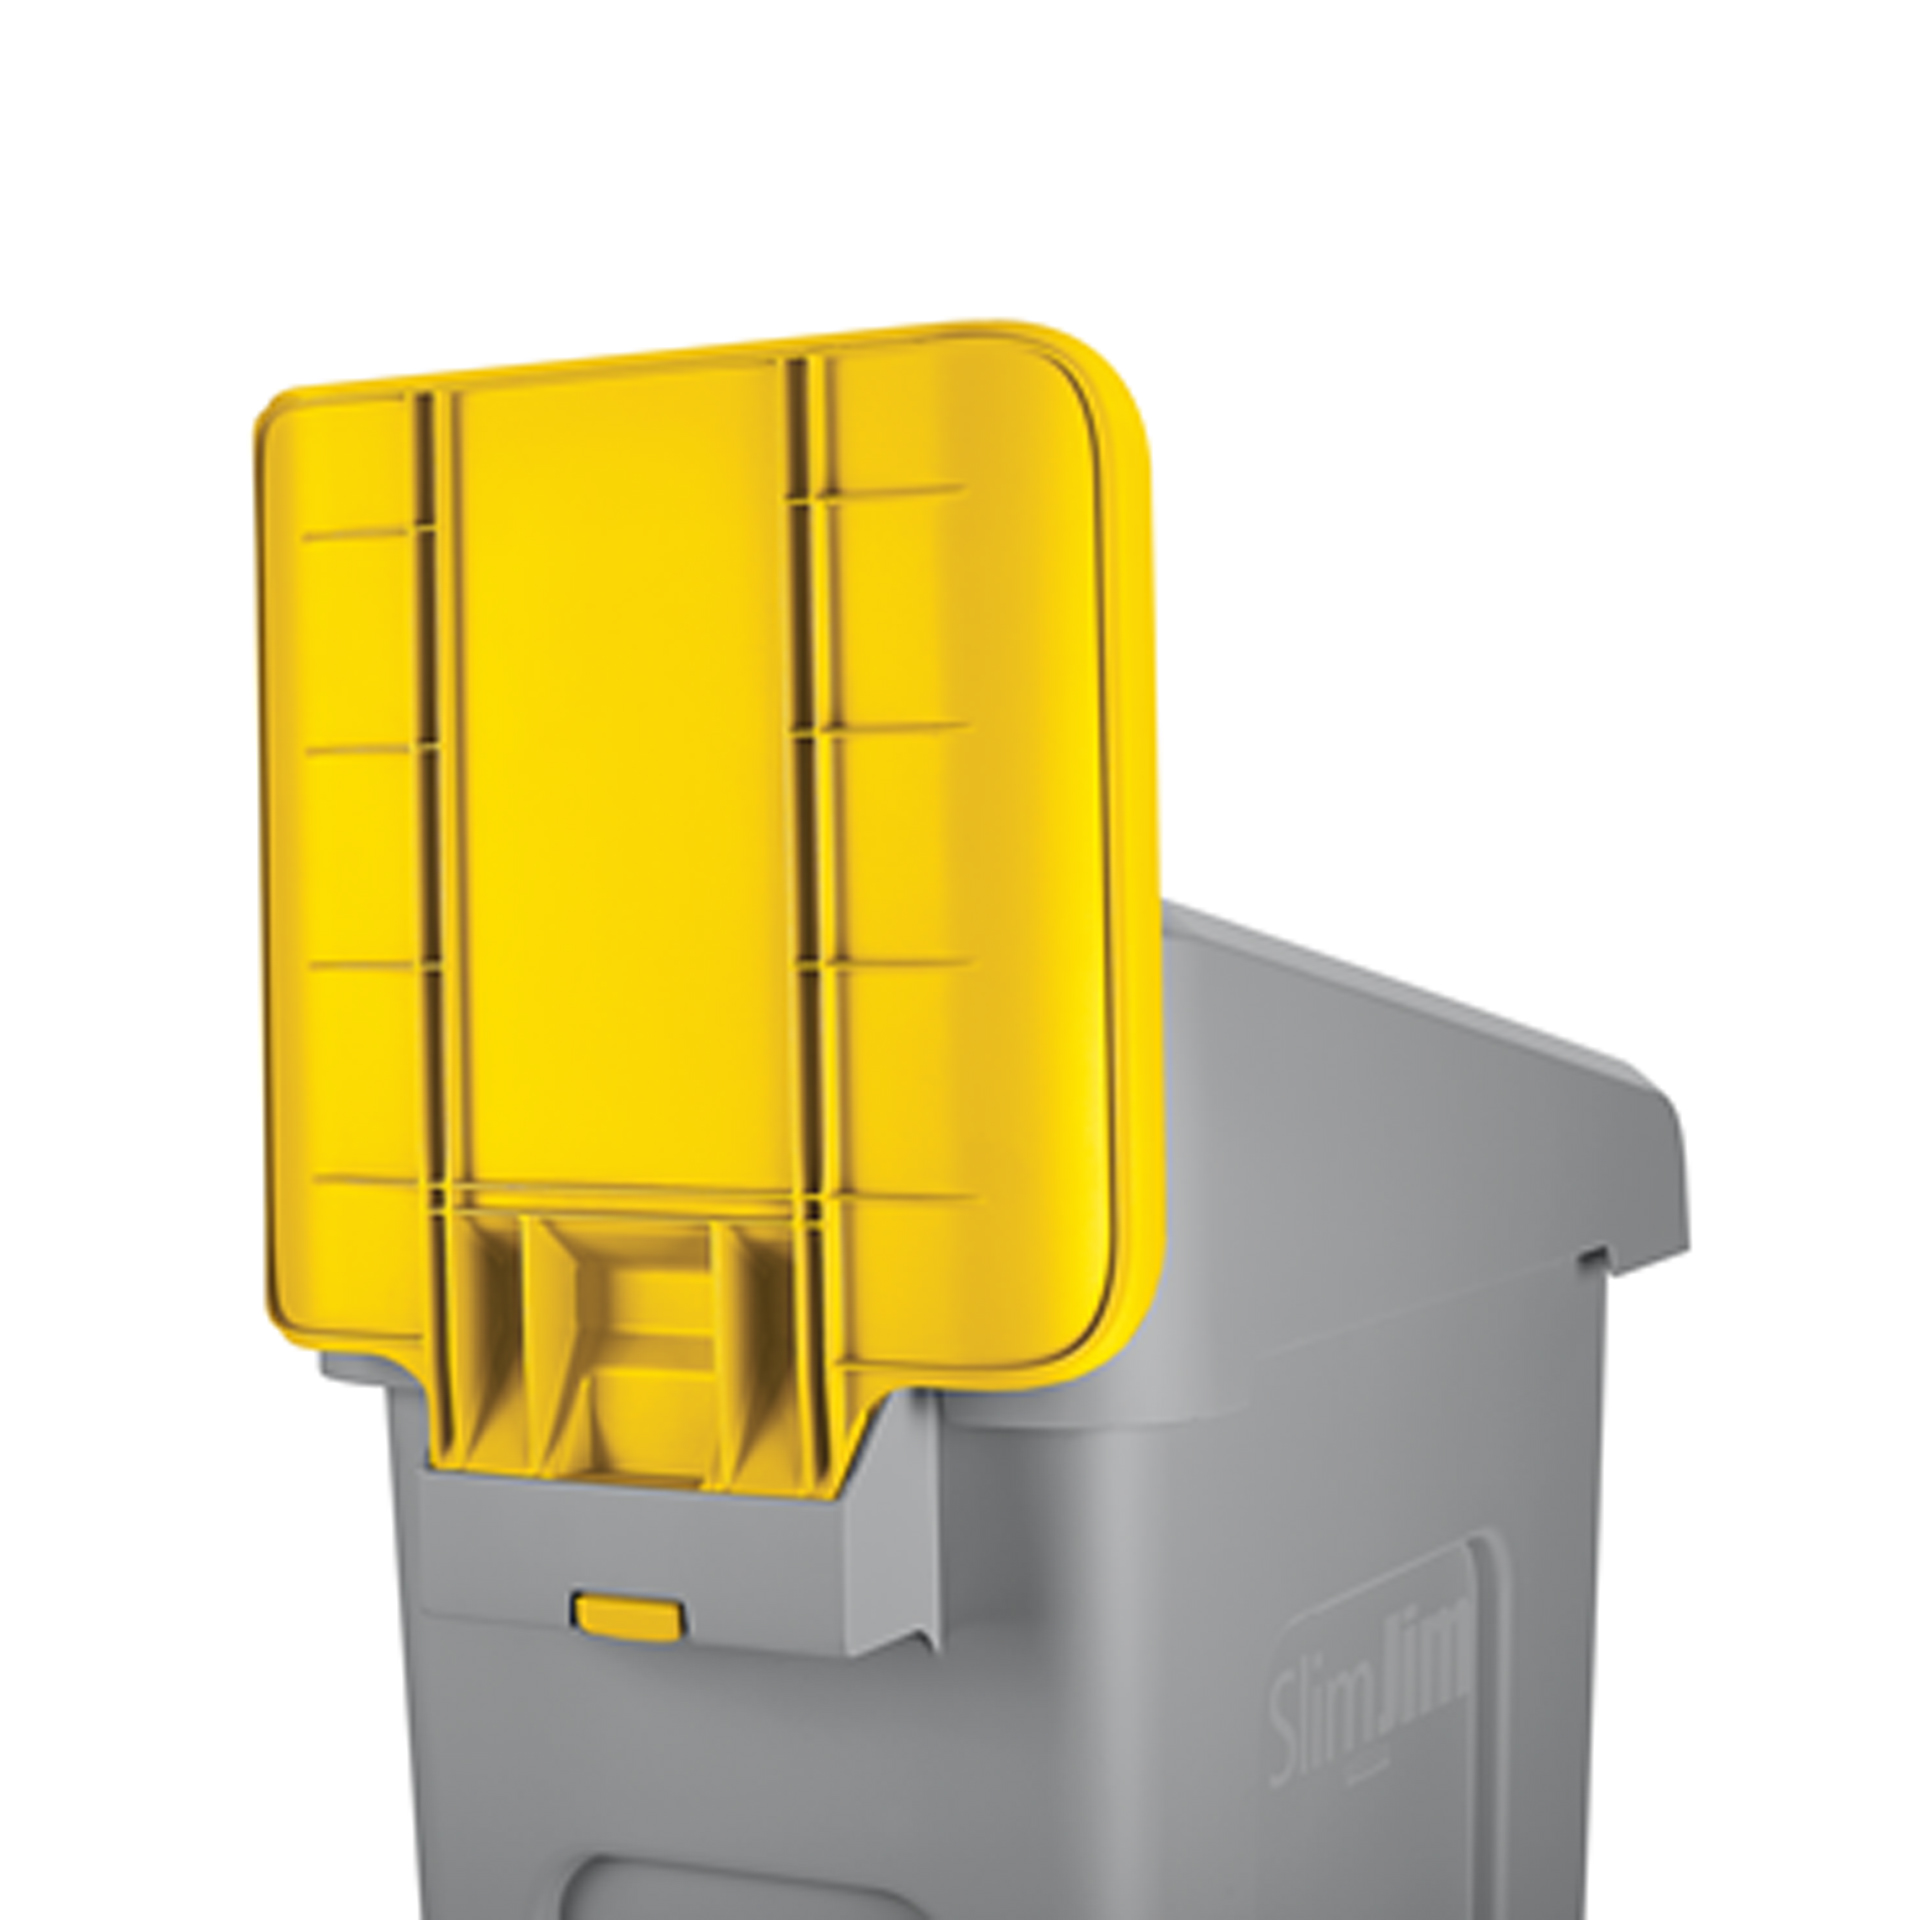 ป้ายสำหรับถังขยะรีไซเคิล Slim Jim® Recycling Station สีเหลือง